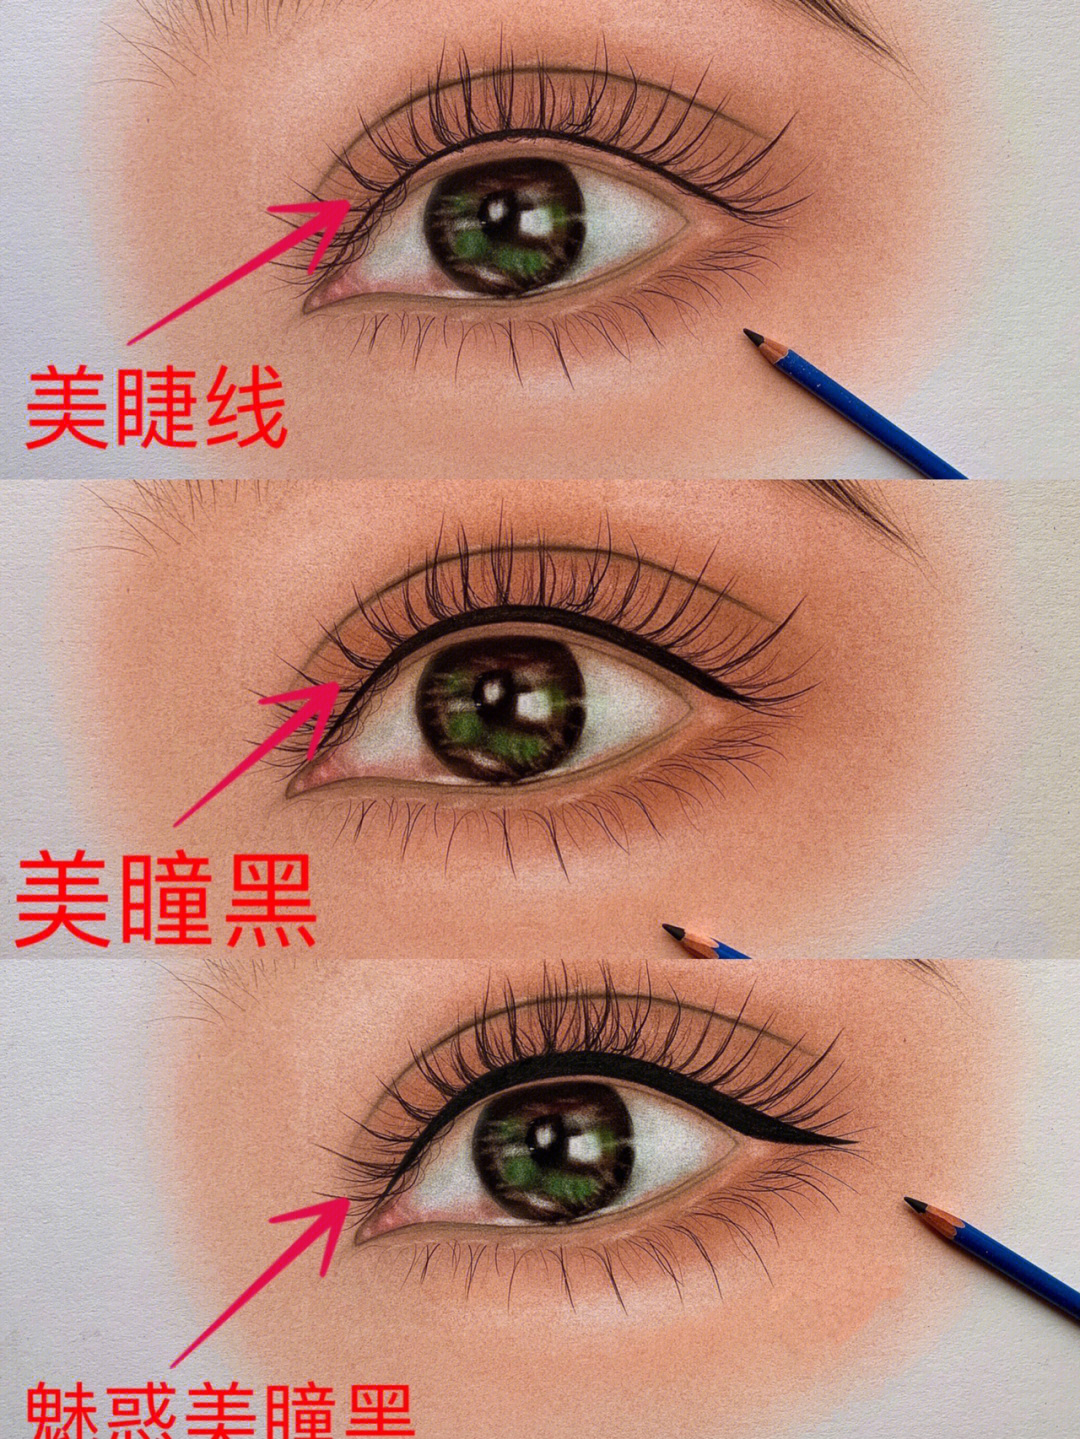 眼线教程  刘亦菲们都喜欢的不同眼形,适合不同的眼线,美睫线,美瞳线